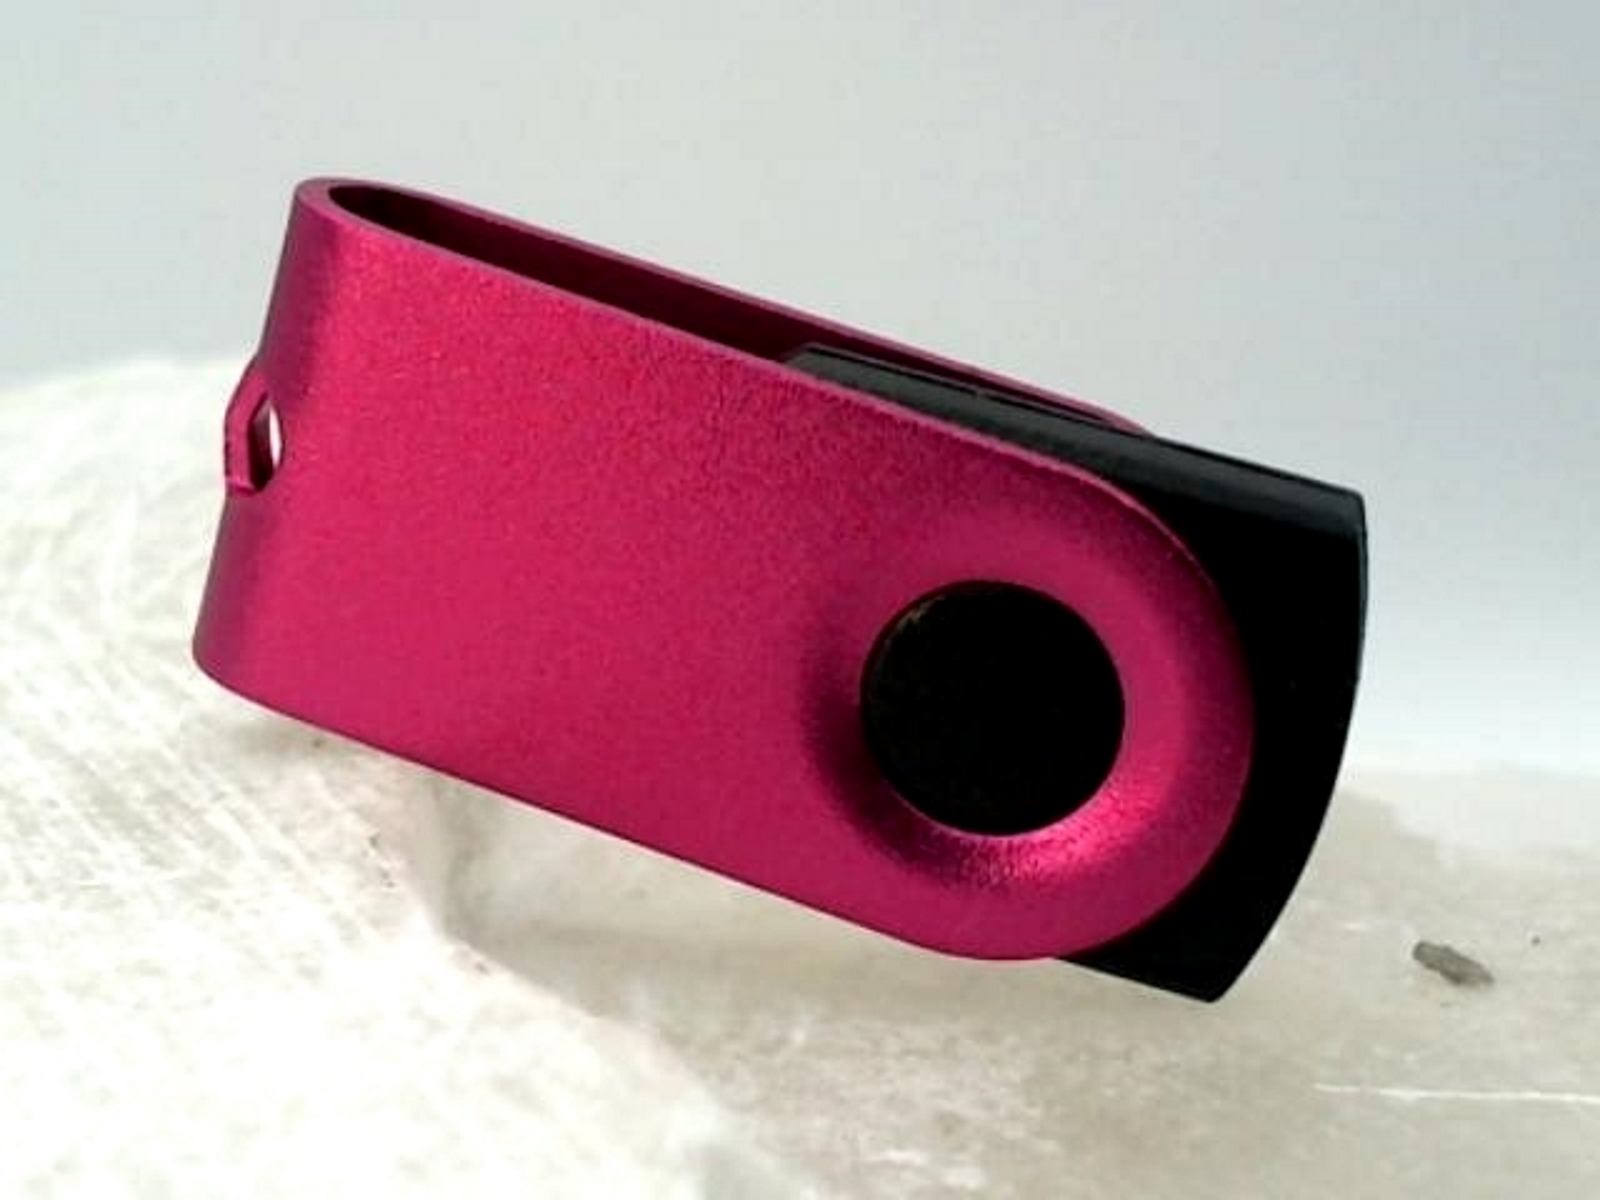 GERMANY ® GB) USB-Stick (Schwarz-Pink, 128 MINI-SWIVEL USB